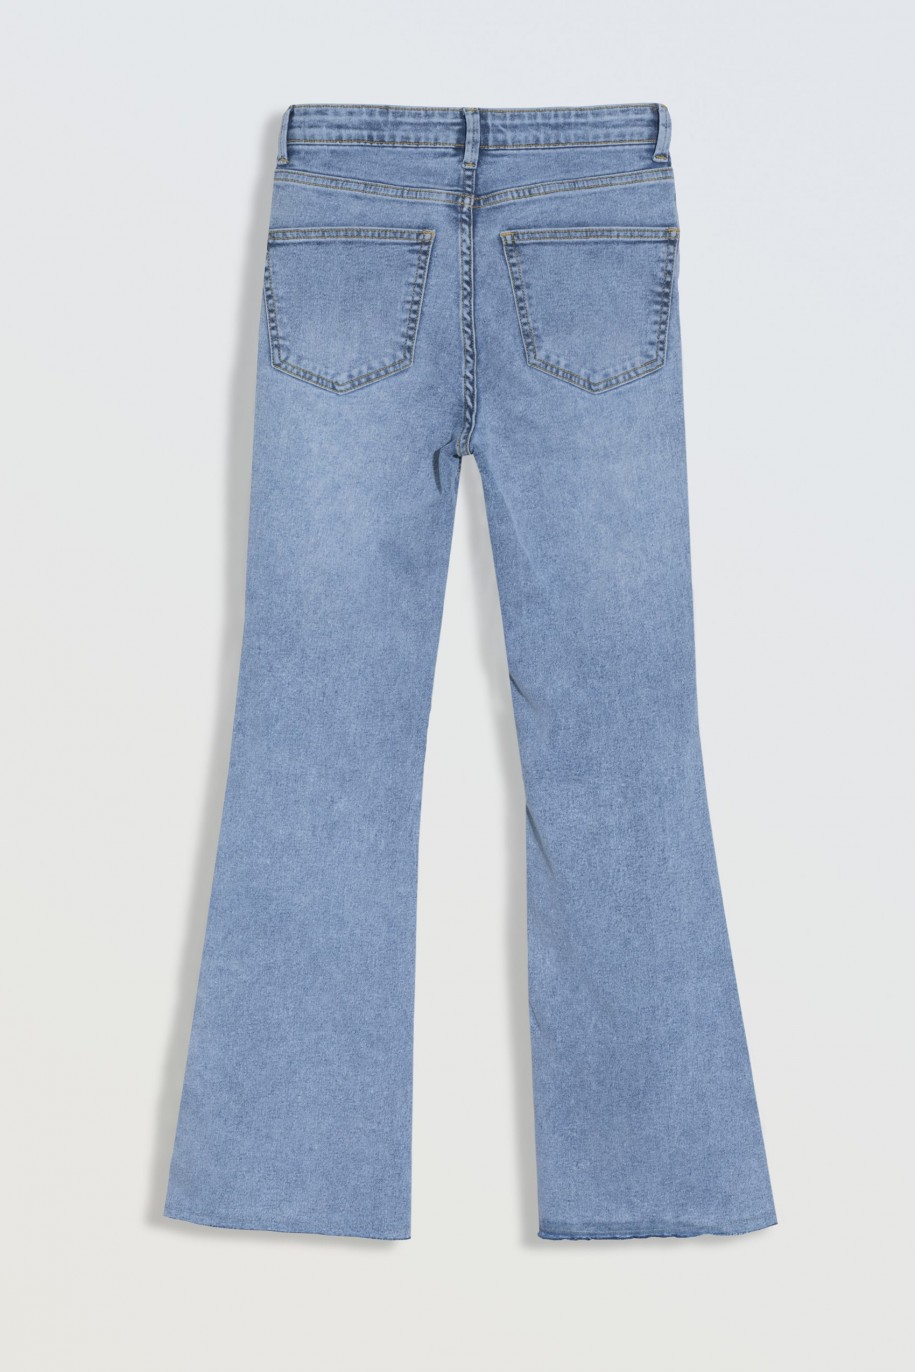 Niebieskie jeansowe dzwony z rozcięciami na nogawkach - 46560